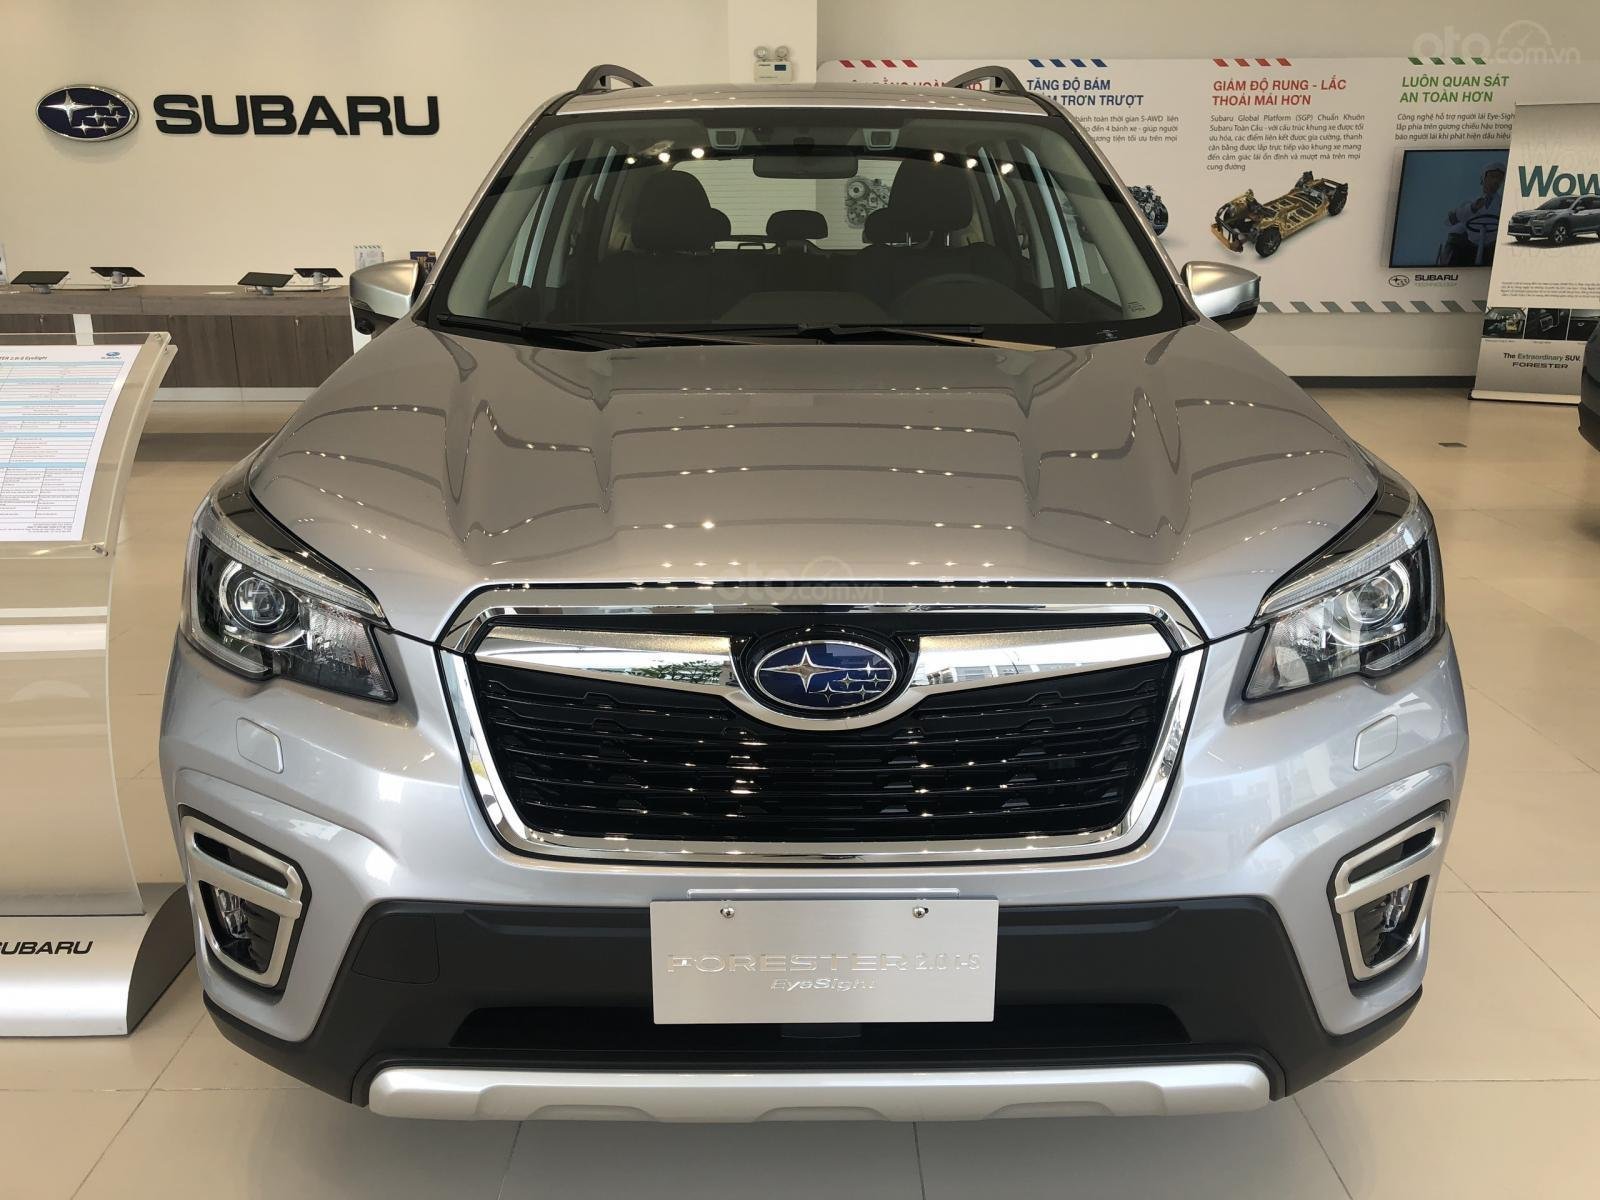 Giá xe Subaru Forester giảm đến hơn 160 triệu đồng trong tháng 11/2019 1a